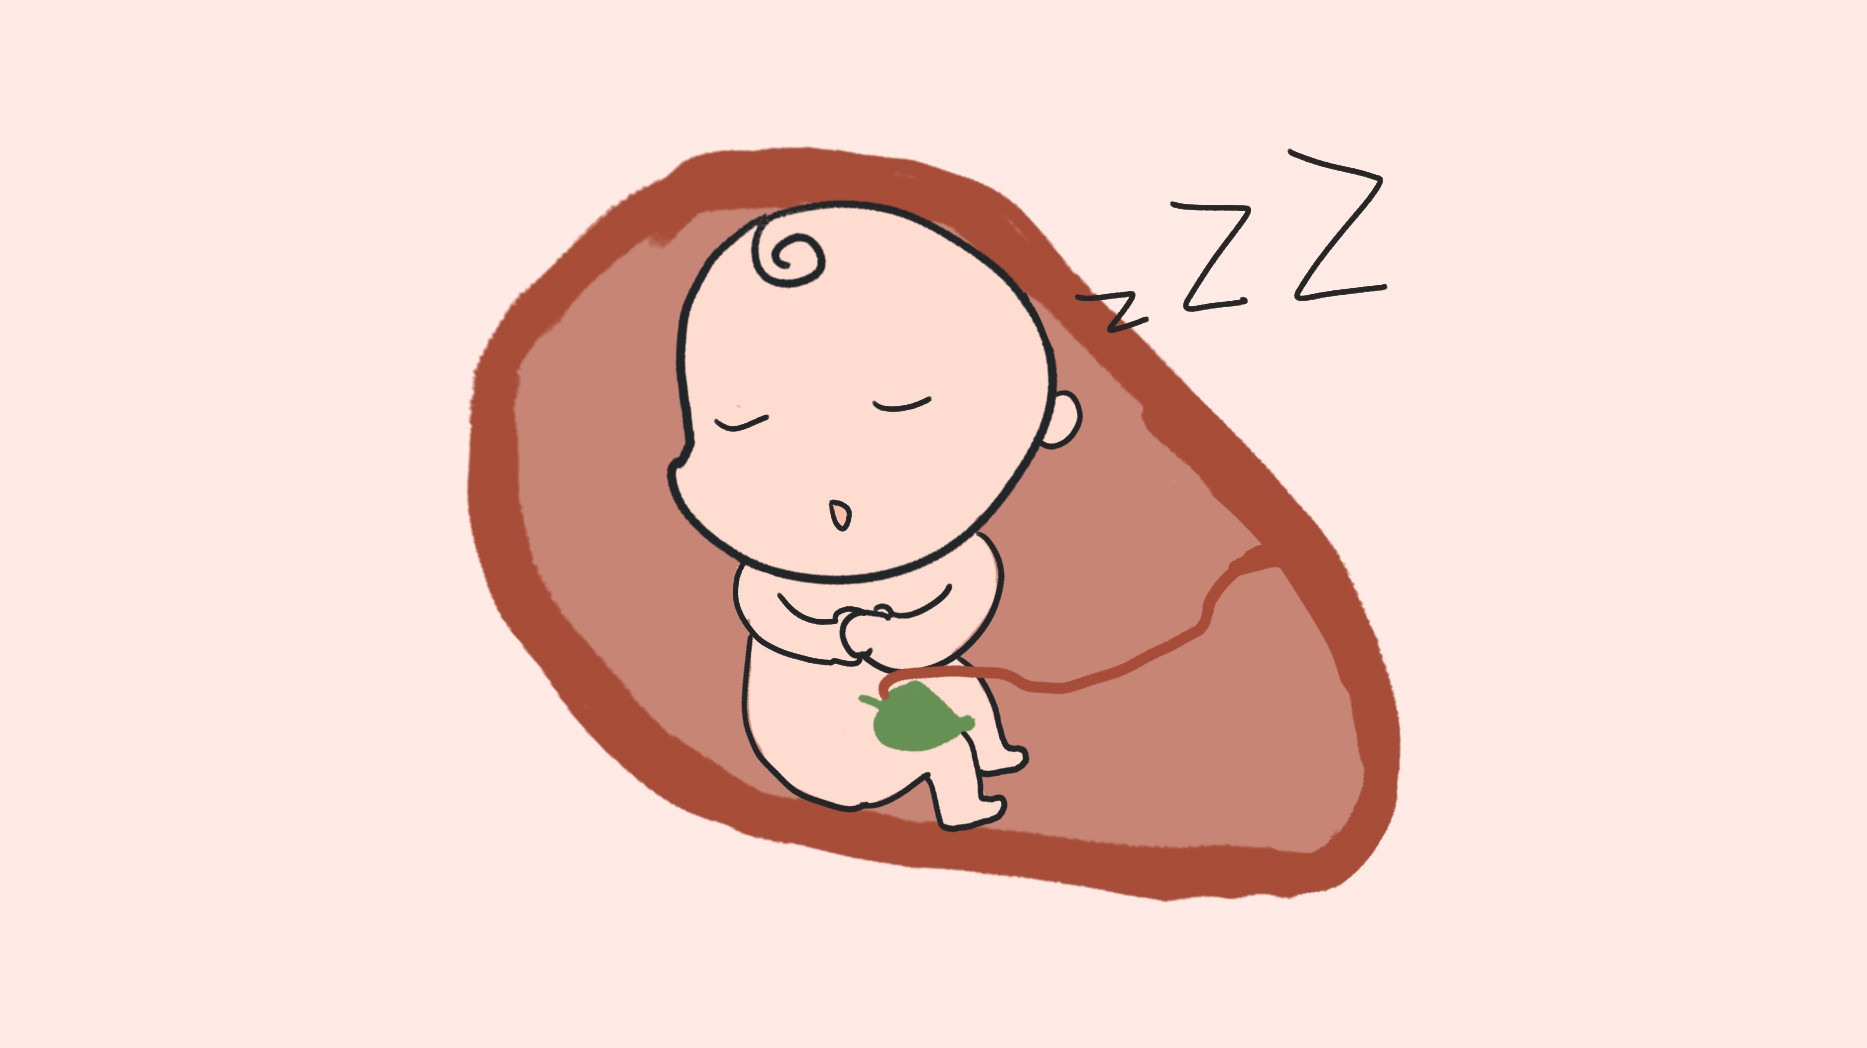 胎儿睡觉卡通图片图片